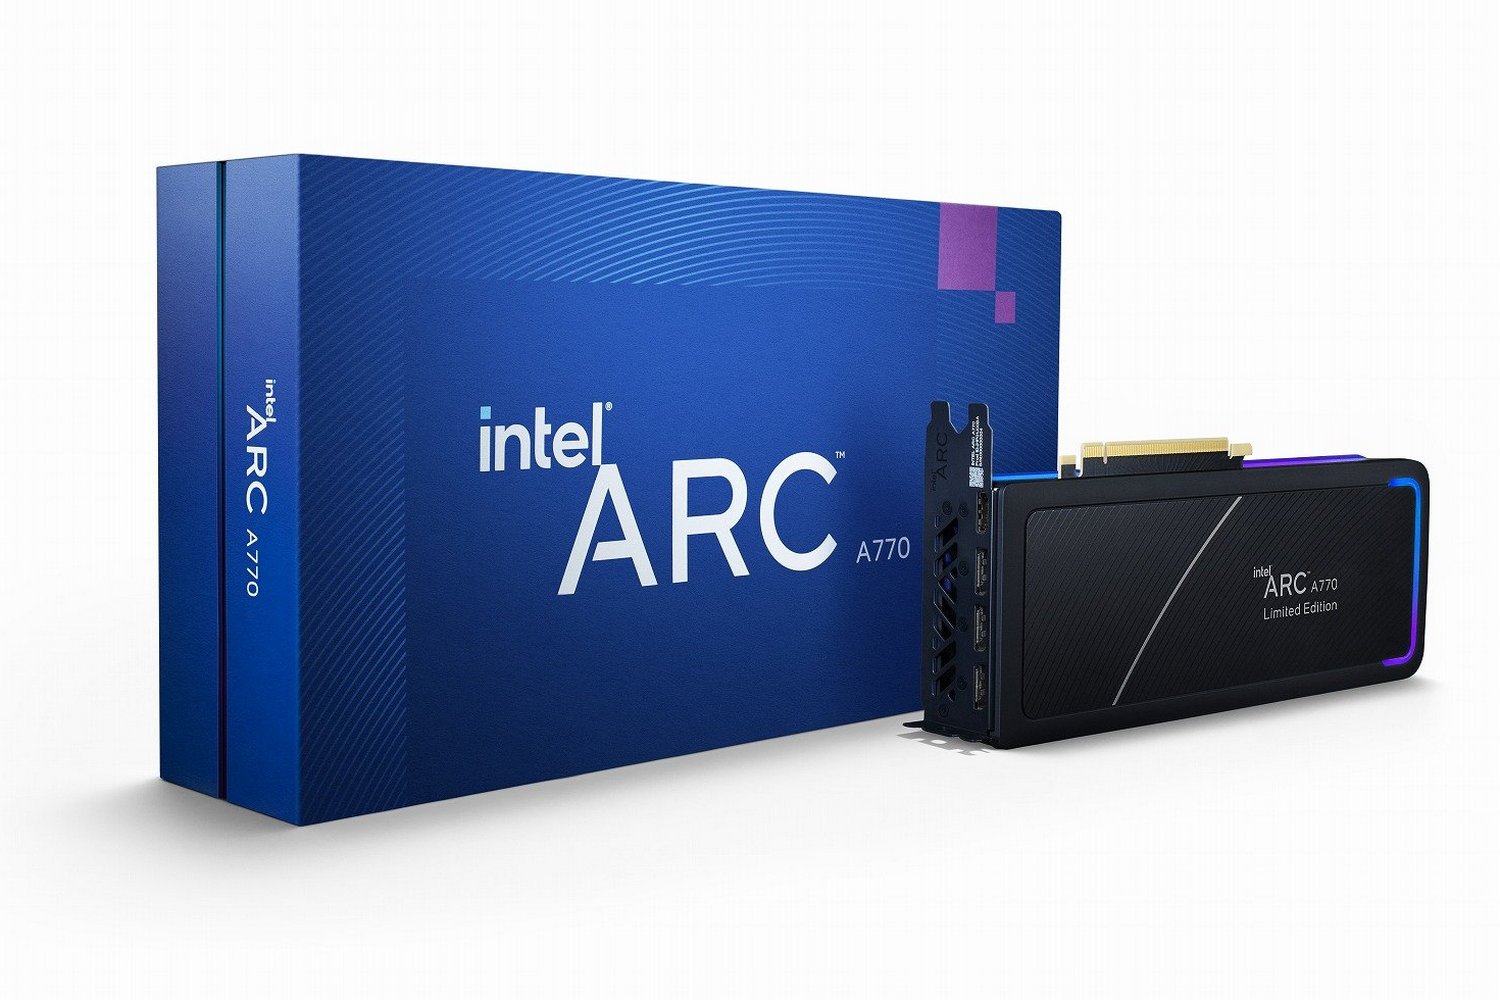 Intel ARC A770 Limited Edition Box